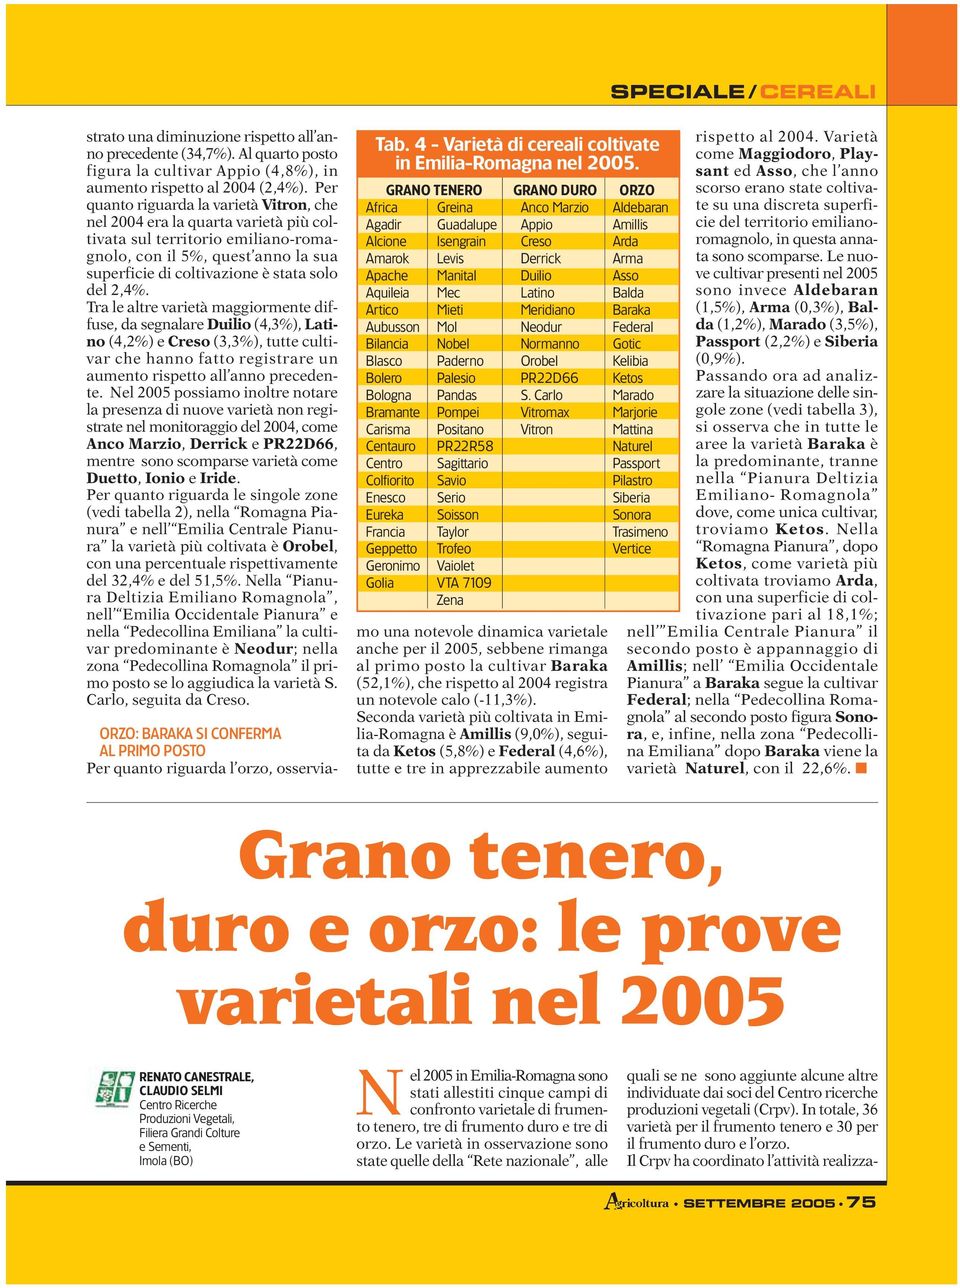 Al quarto posto figura la cultivar Appio (4,8%), in aumento rispetto al 2004 (2,4%).